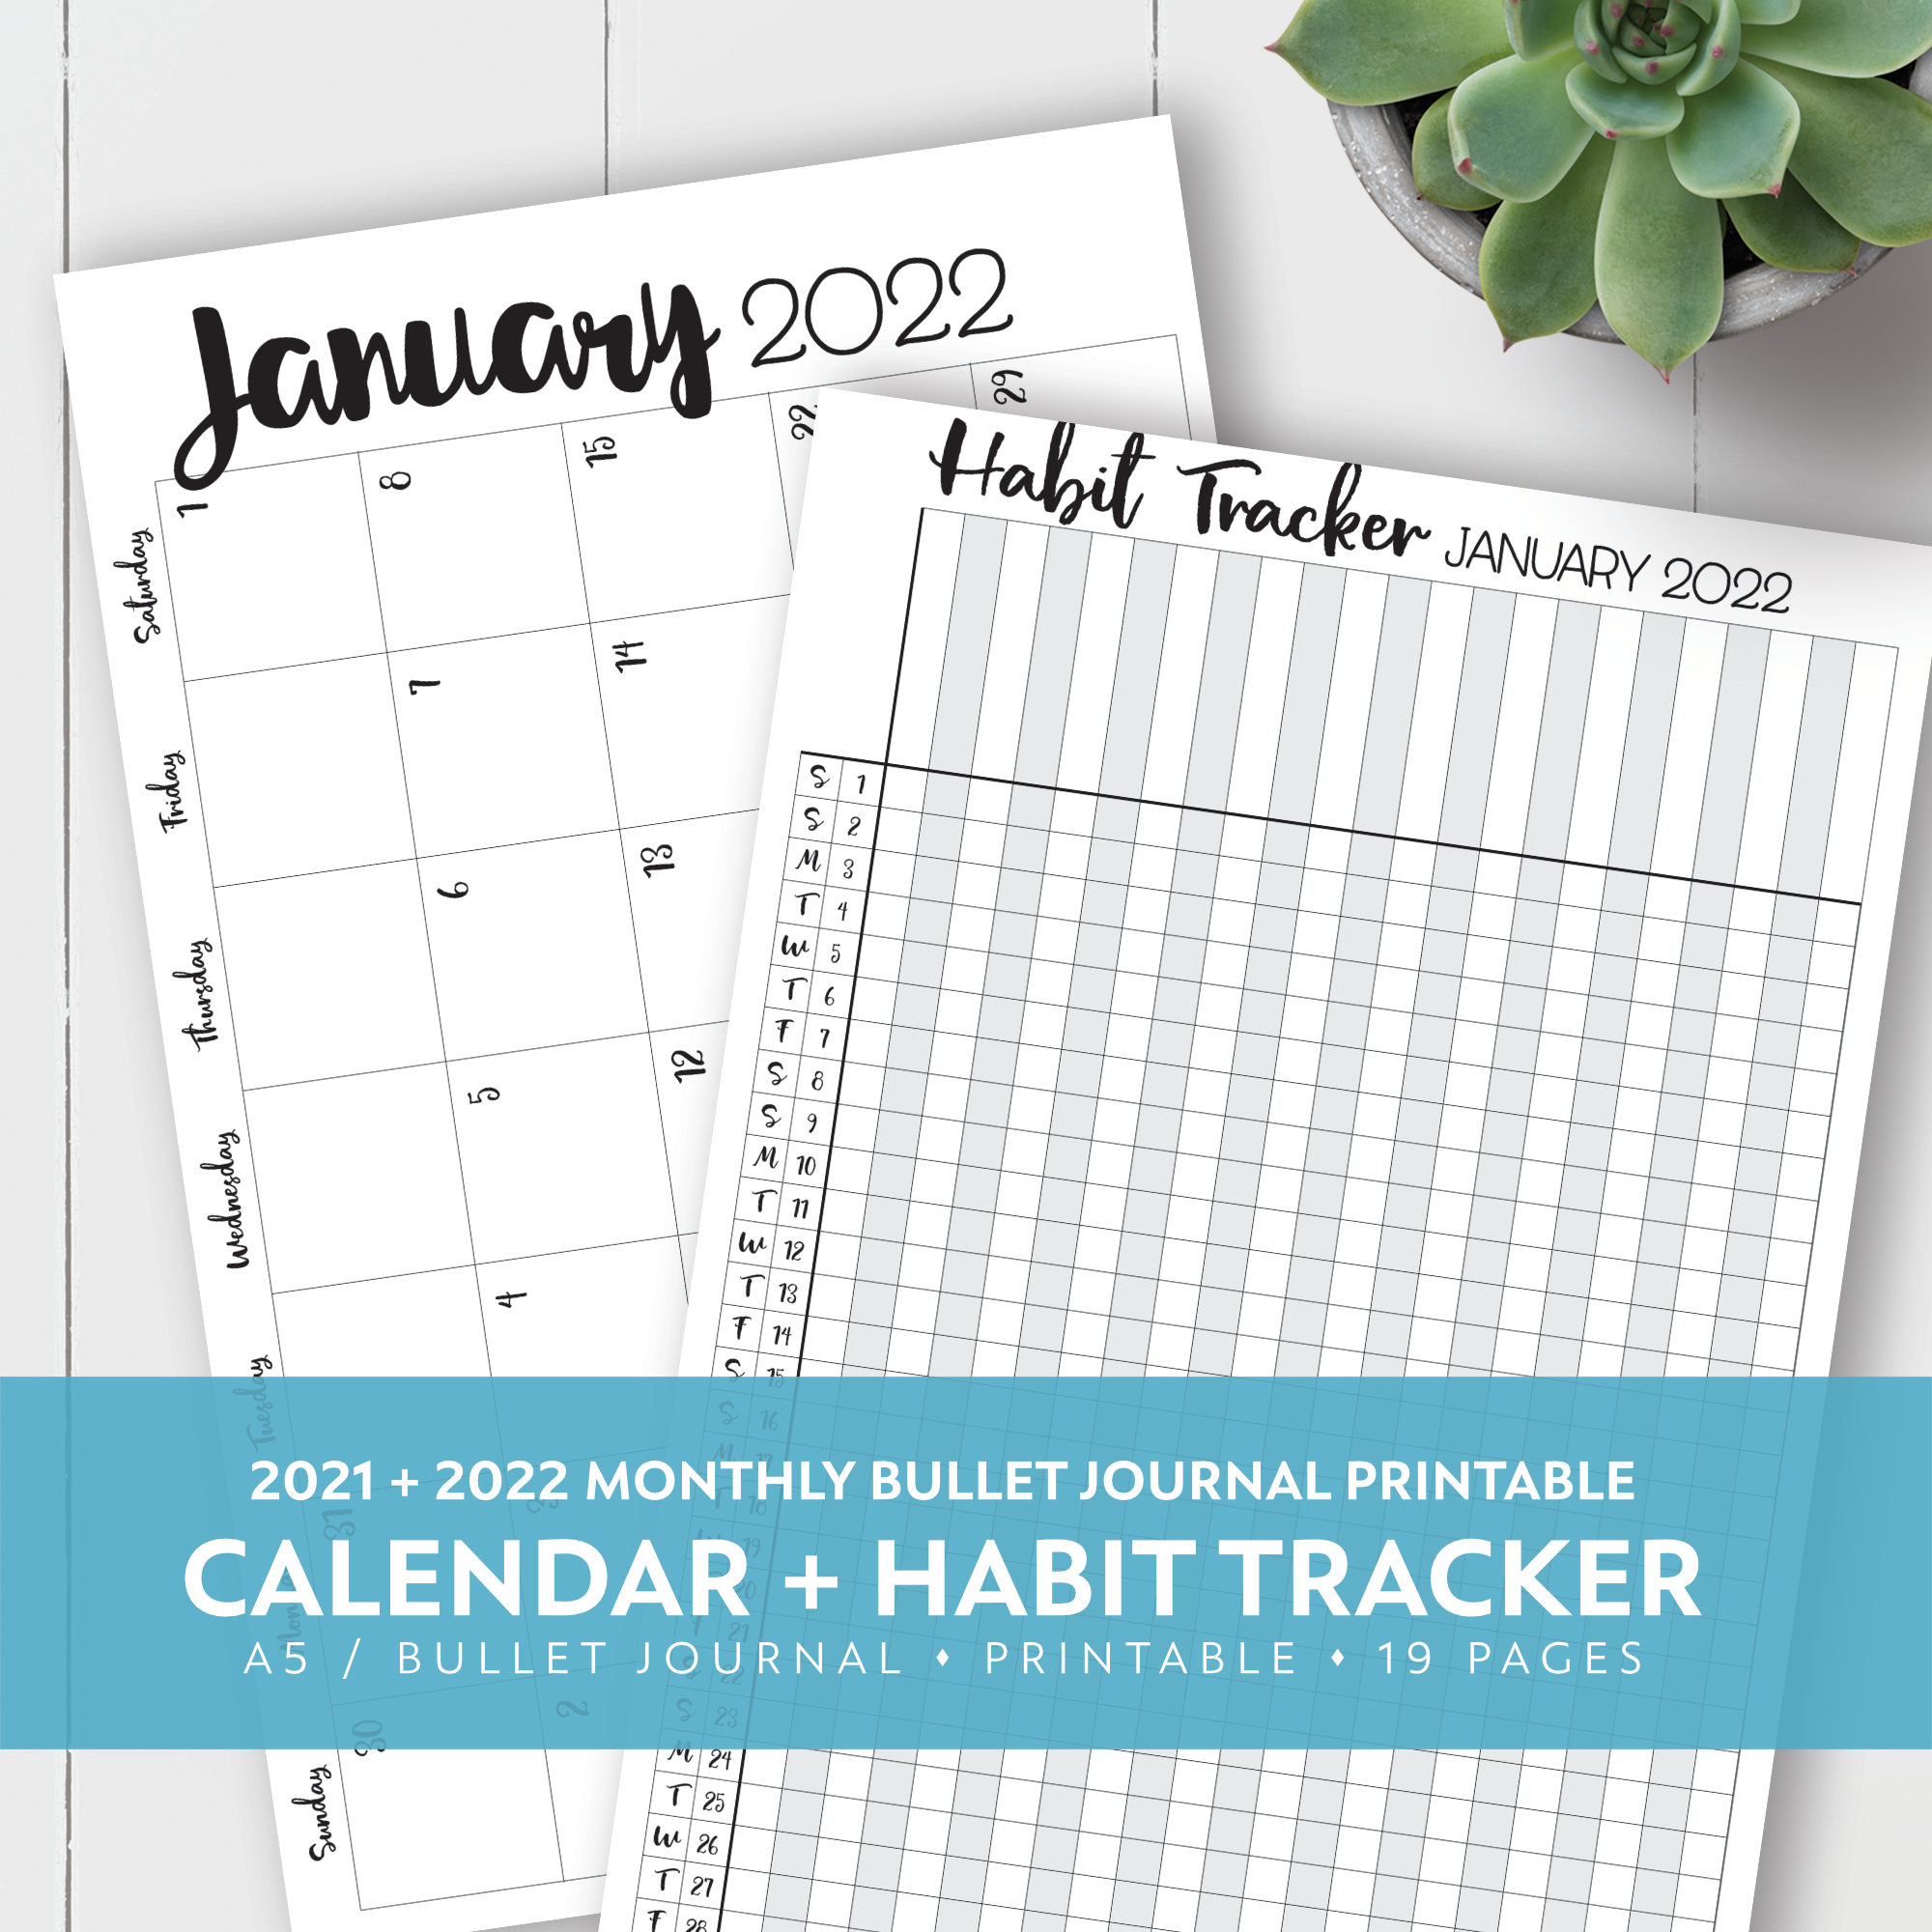 2021 2022 monthly printable calendar habit tracker kit laura kinker designs